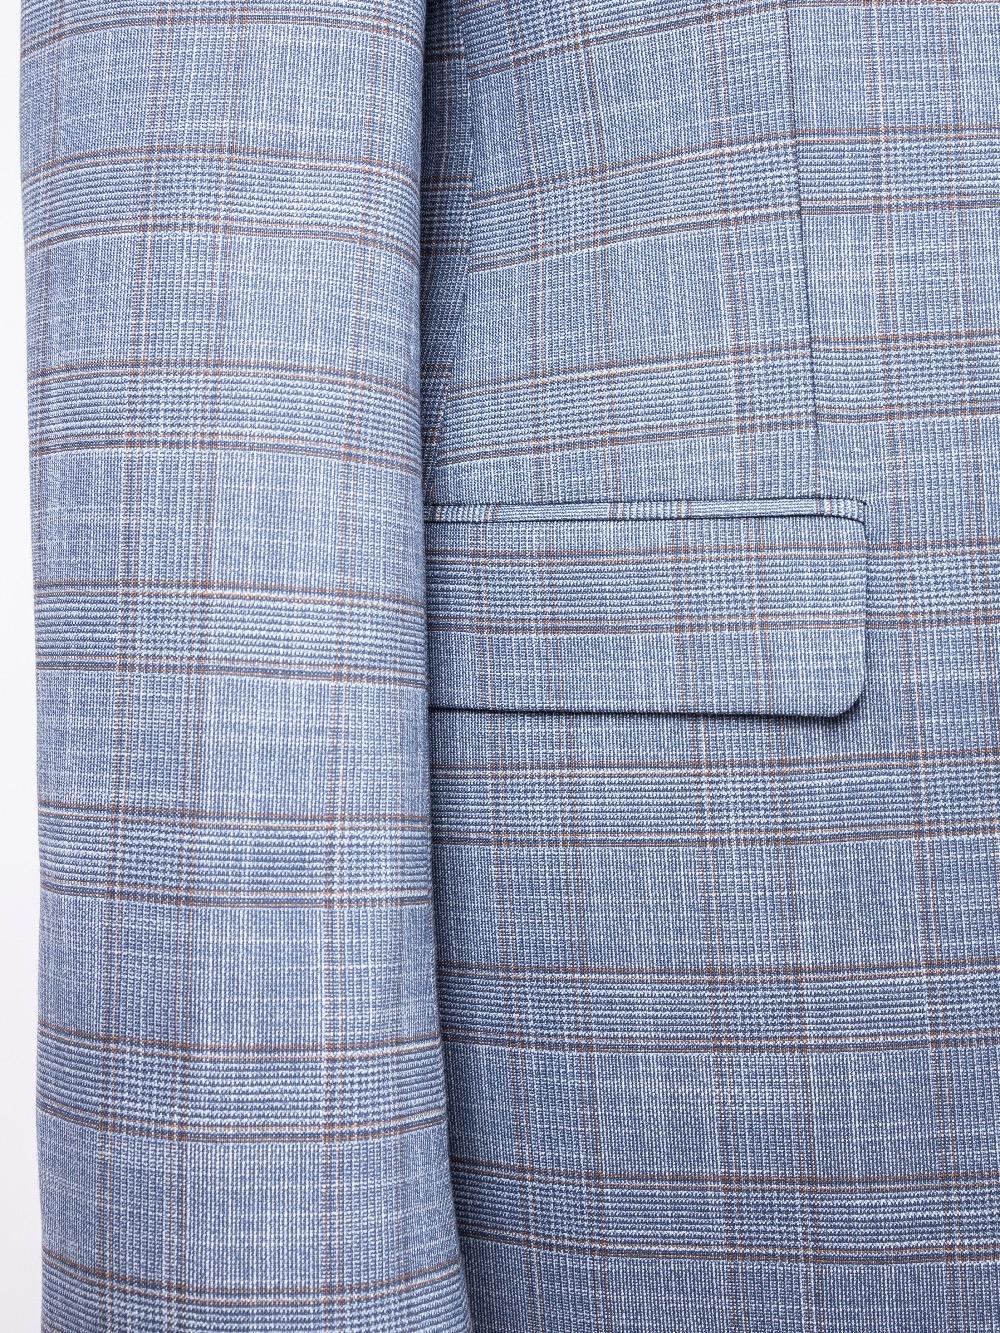 Curtis Blue Set Blazer Linen Suit